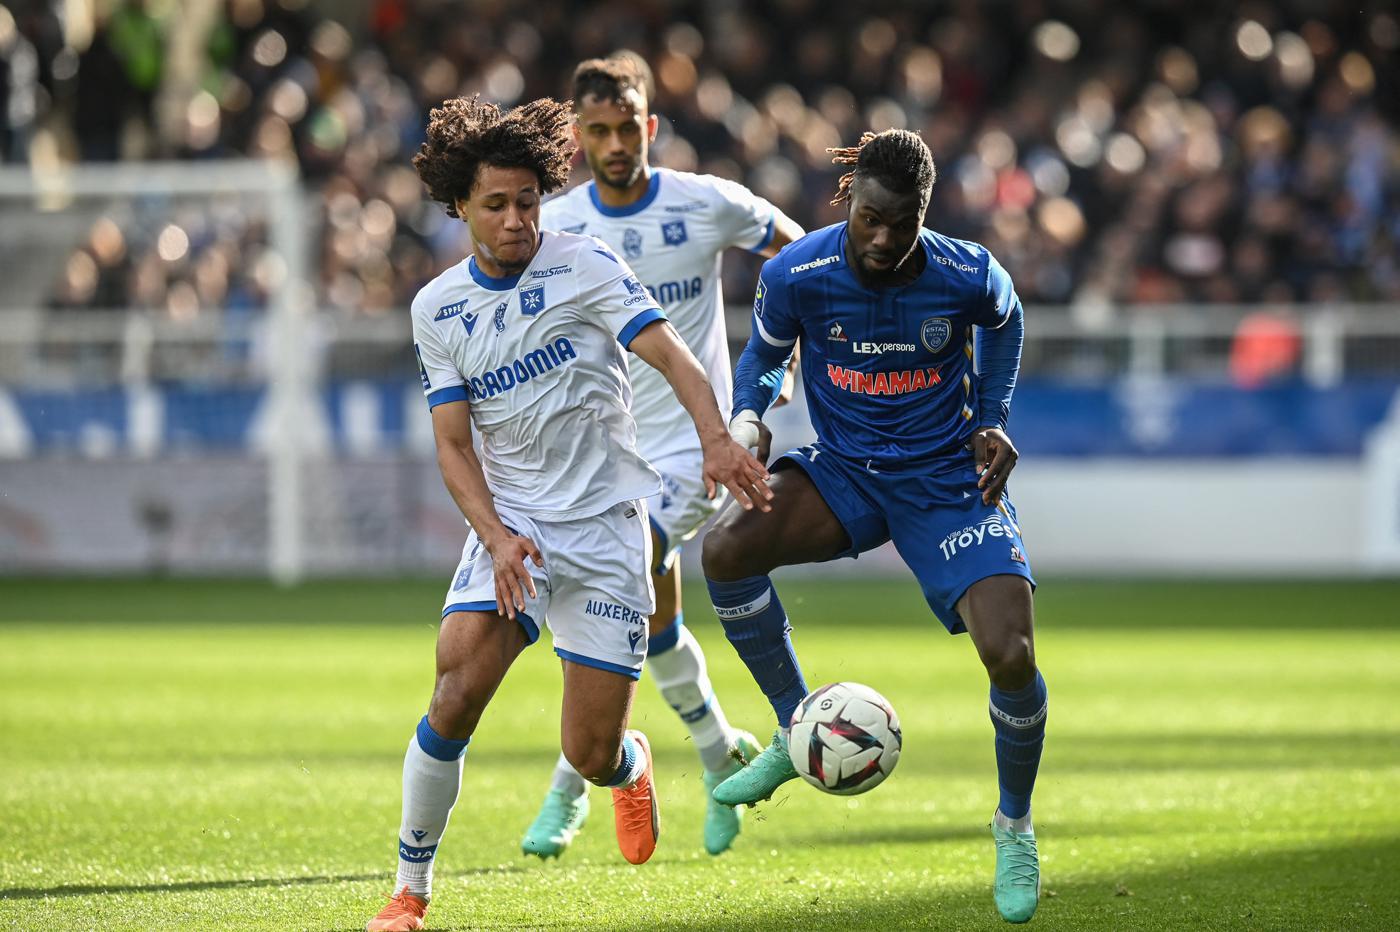 Auxerre - Troyes - 1:0. Französische Meisterschaft, 29. Runde. Spielbericht, Statistiken